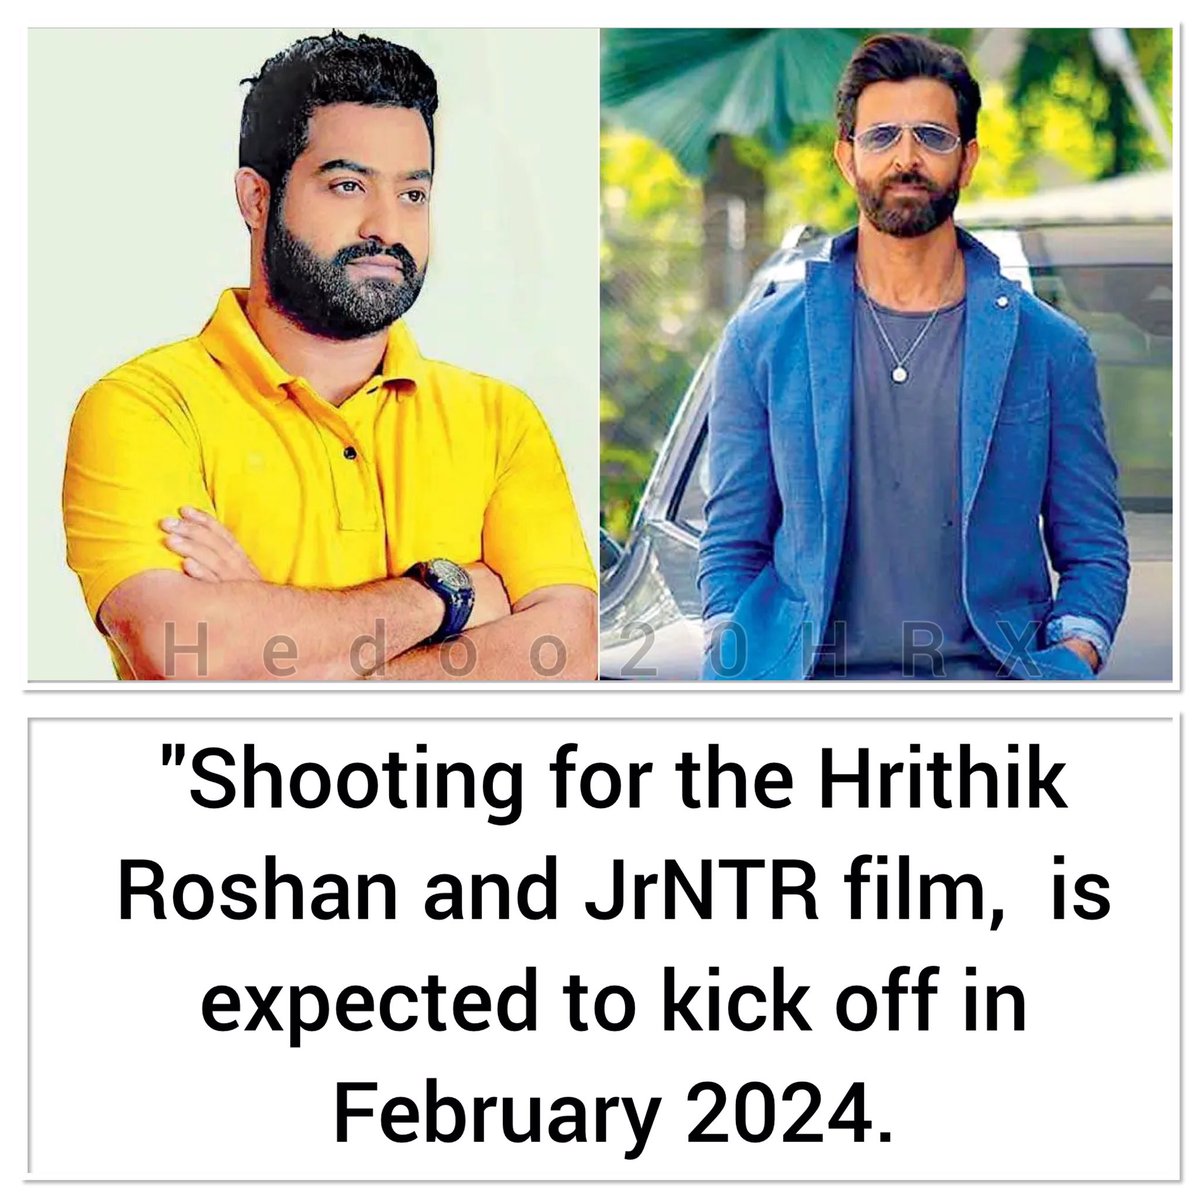 ومن المتوقع أن يبدأ تصوير فيلم الحرب2 ، ل #HrithikRoshan و #JrNTR في فبراير 2024.
:
#ريتيك_روشان #هريثيك_روشان
#Hrithik #TeamHrithik  #Superstar #Hrithikians #Bollywood #hrithikroshanzone #war #war2